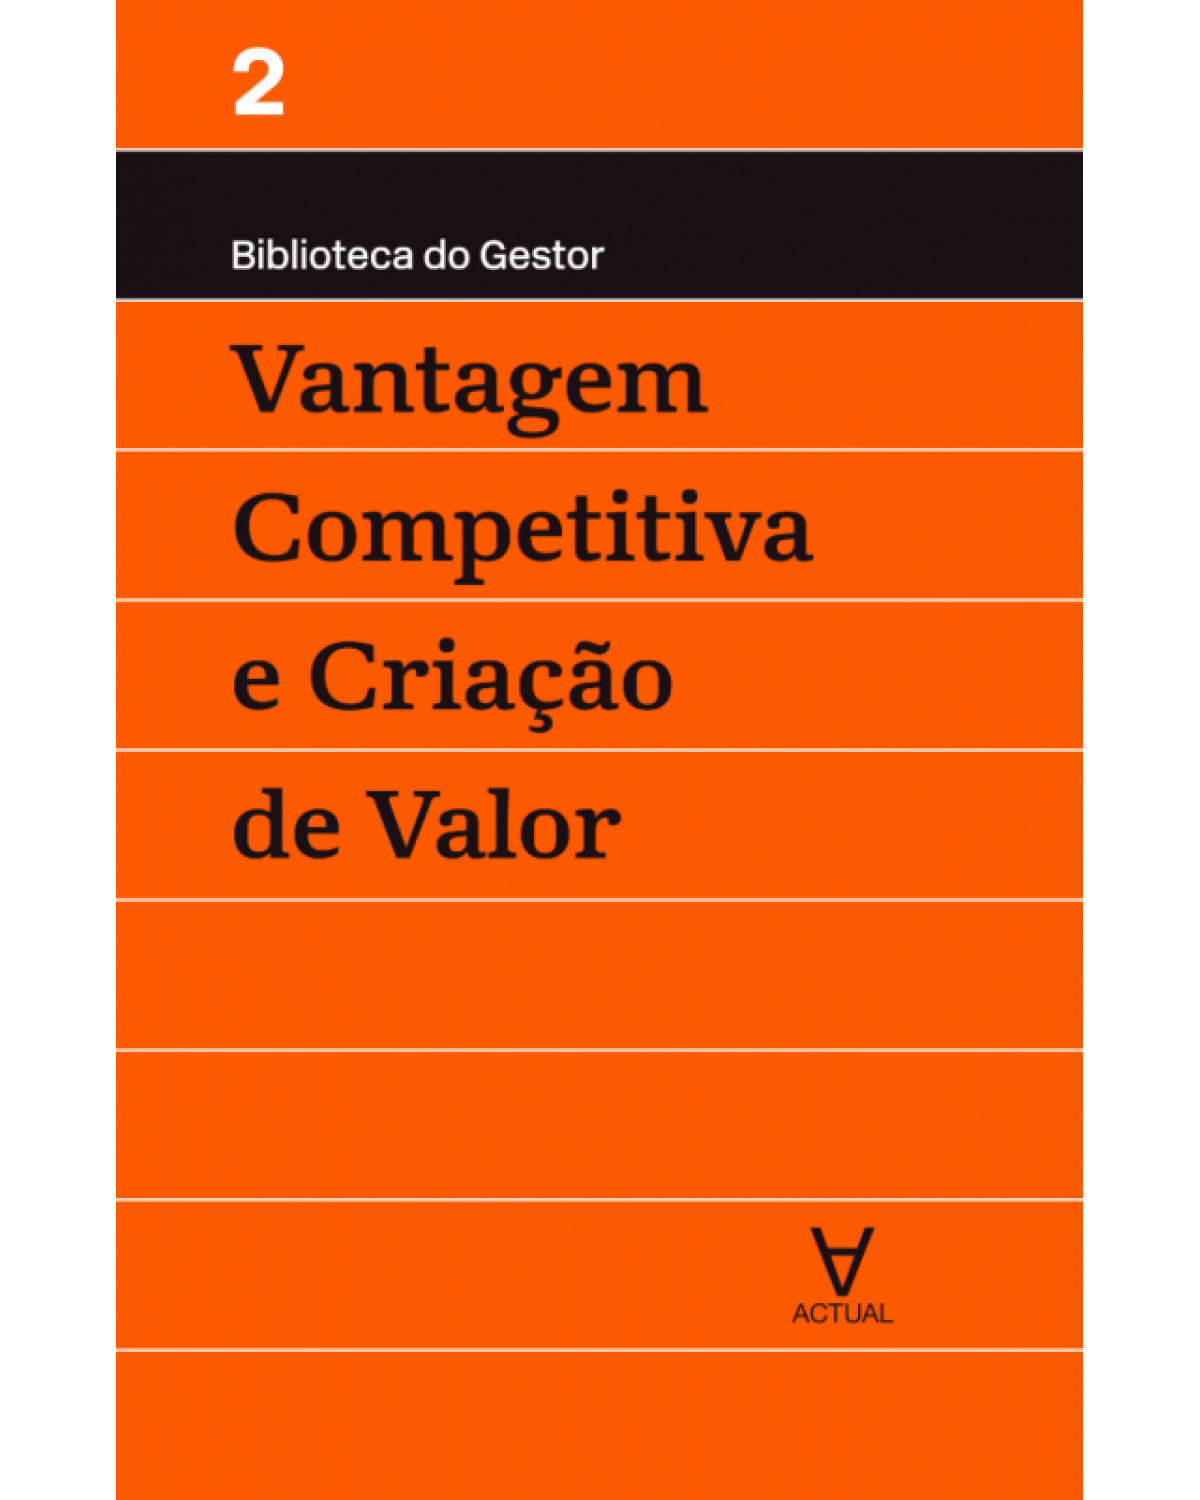 Vantagem competitiva e criação de valor - Volume 2:  - 1ª Edição | 2017